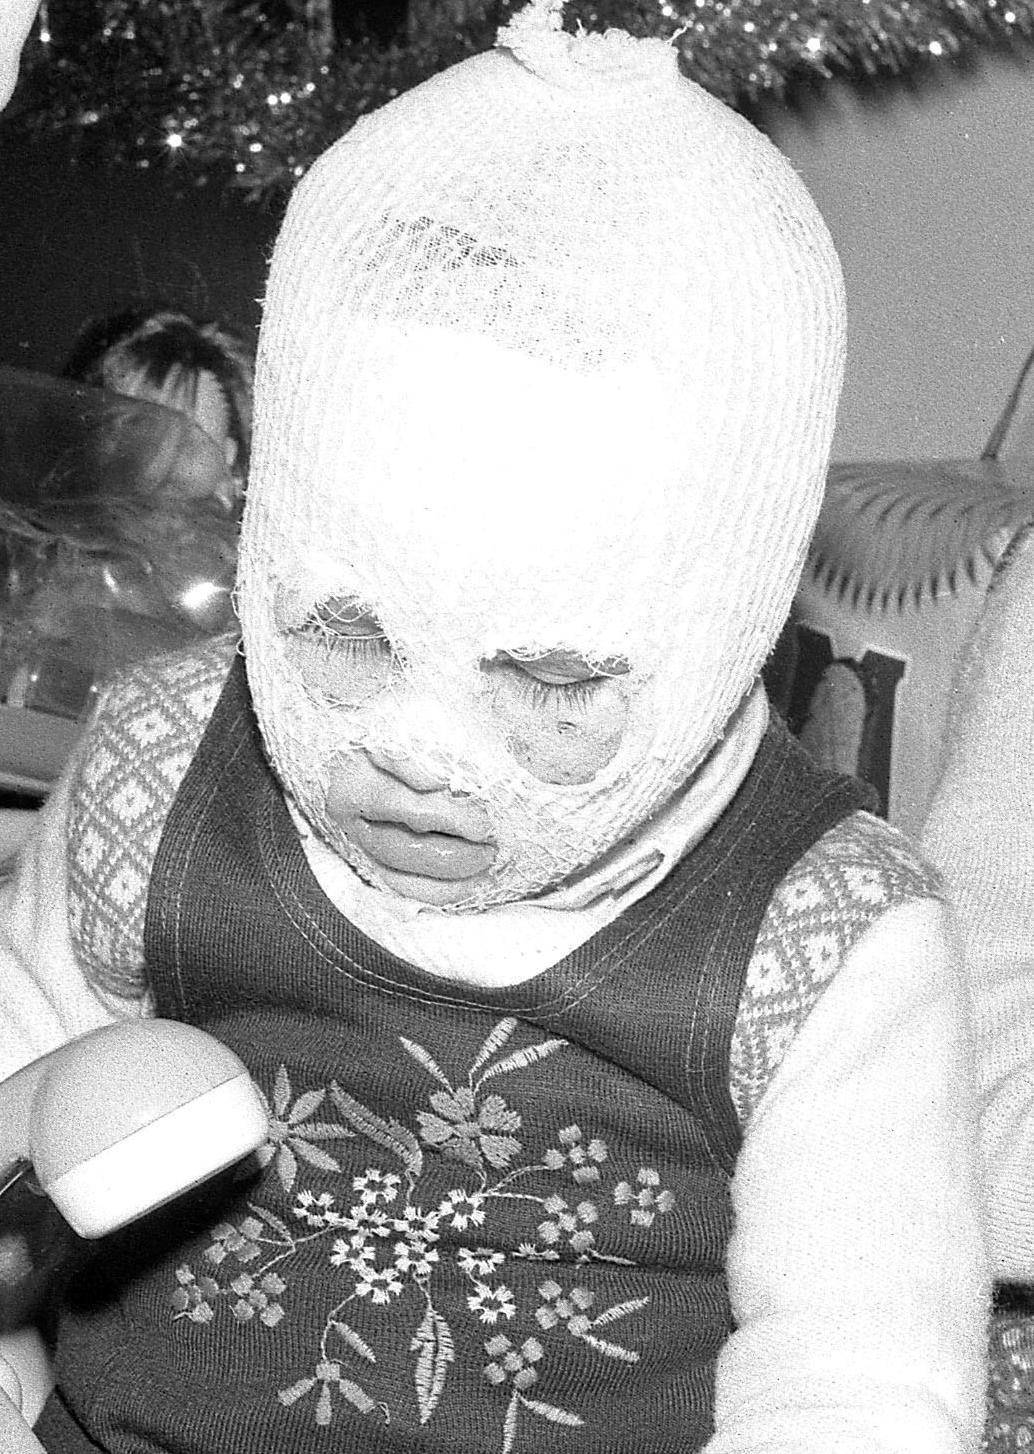 Aveva due anni e si ritrovò col viso sfigurato. Oggi è una donna bella e felice